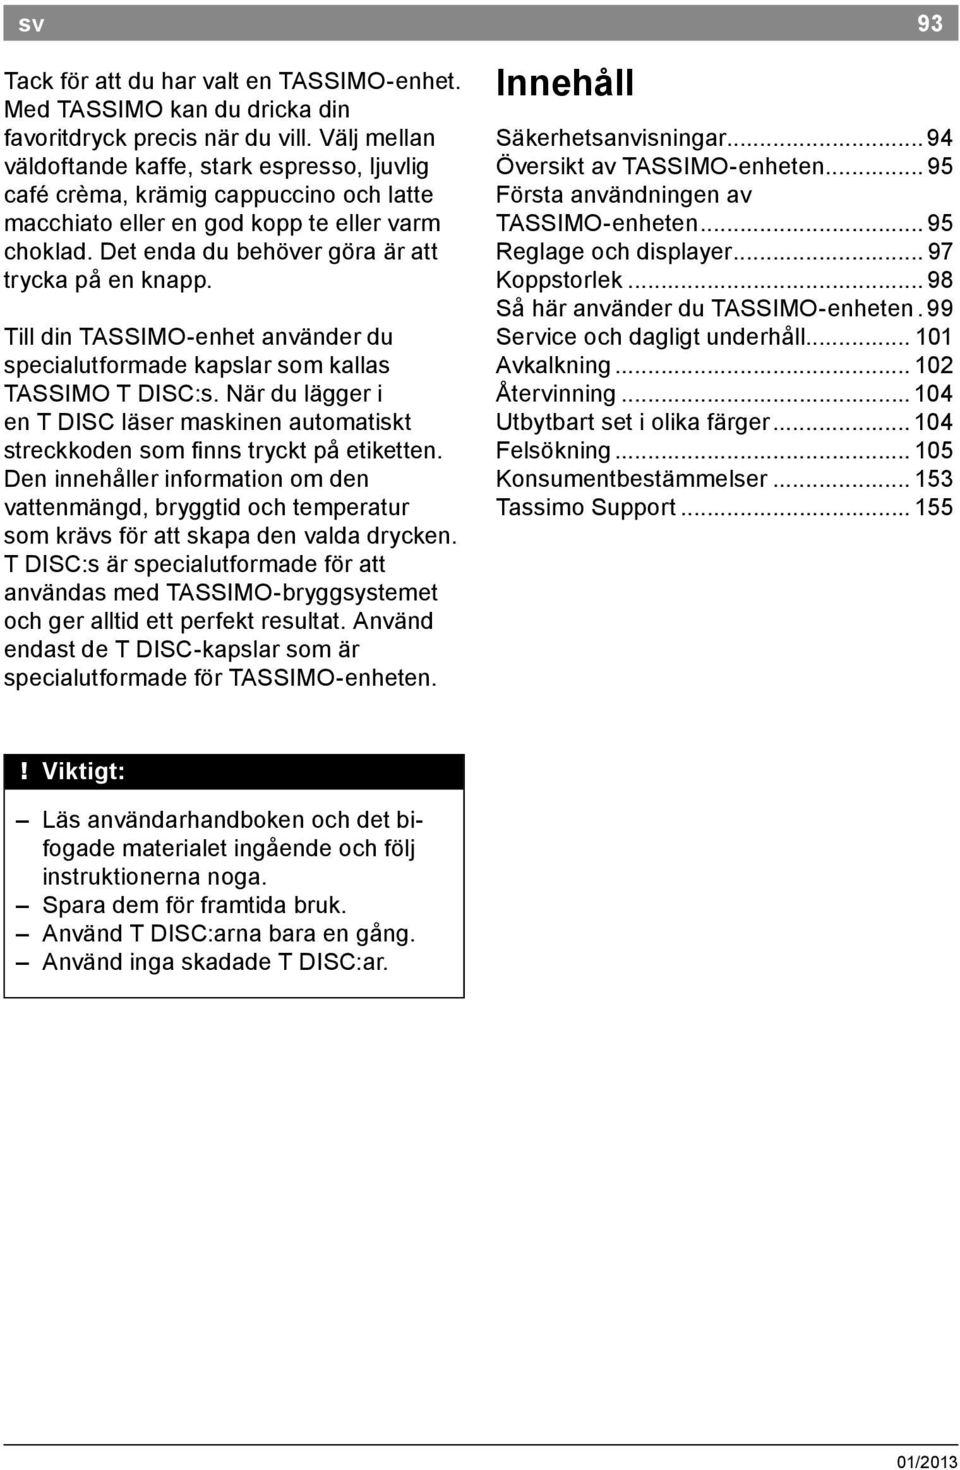 Till din TASSIMO enhet använder du specialutformade kapslar som kallas TASSIMO T DISC:s. När du lägger i en T DISC läser maskinen automatiskt streckkoden som inns tryckt på etiketten.